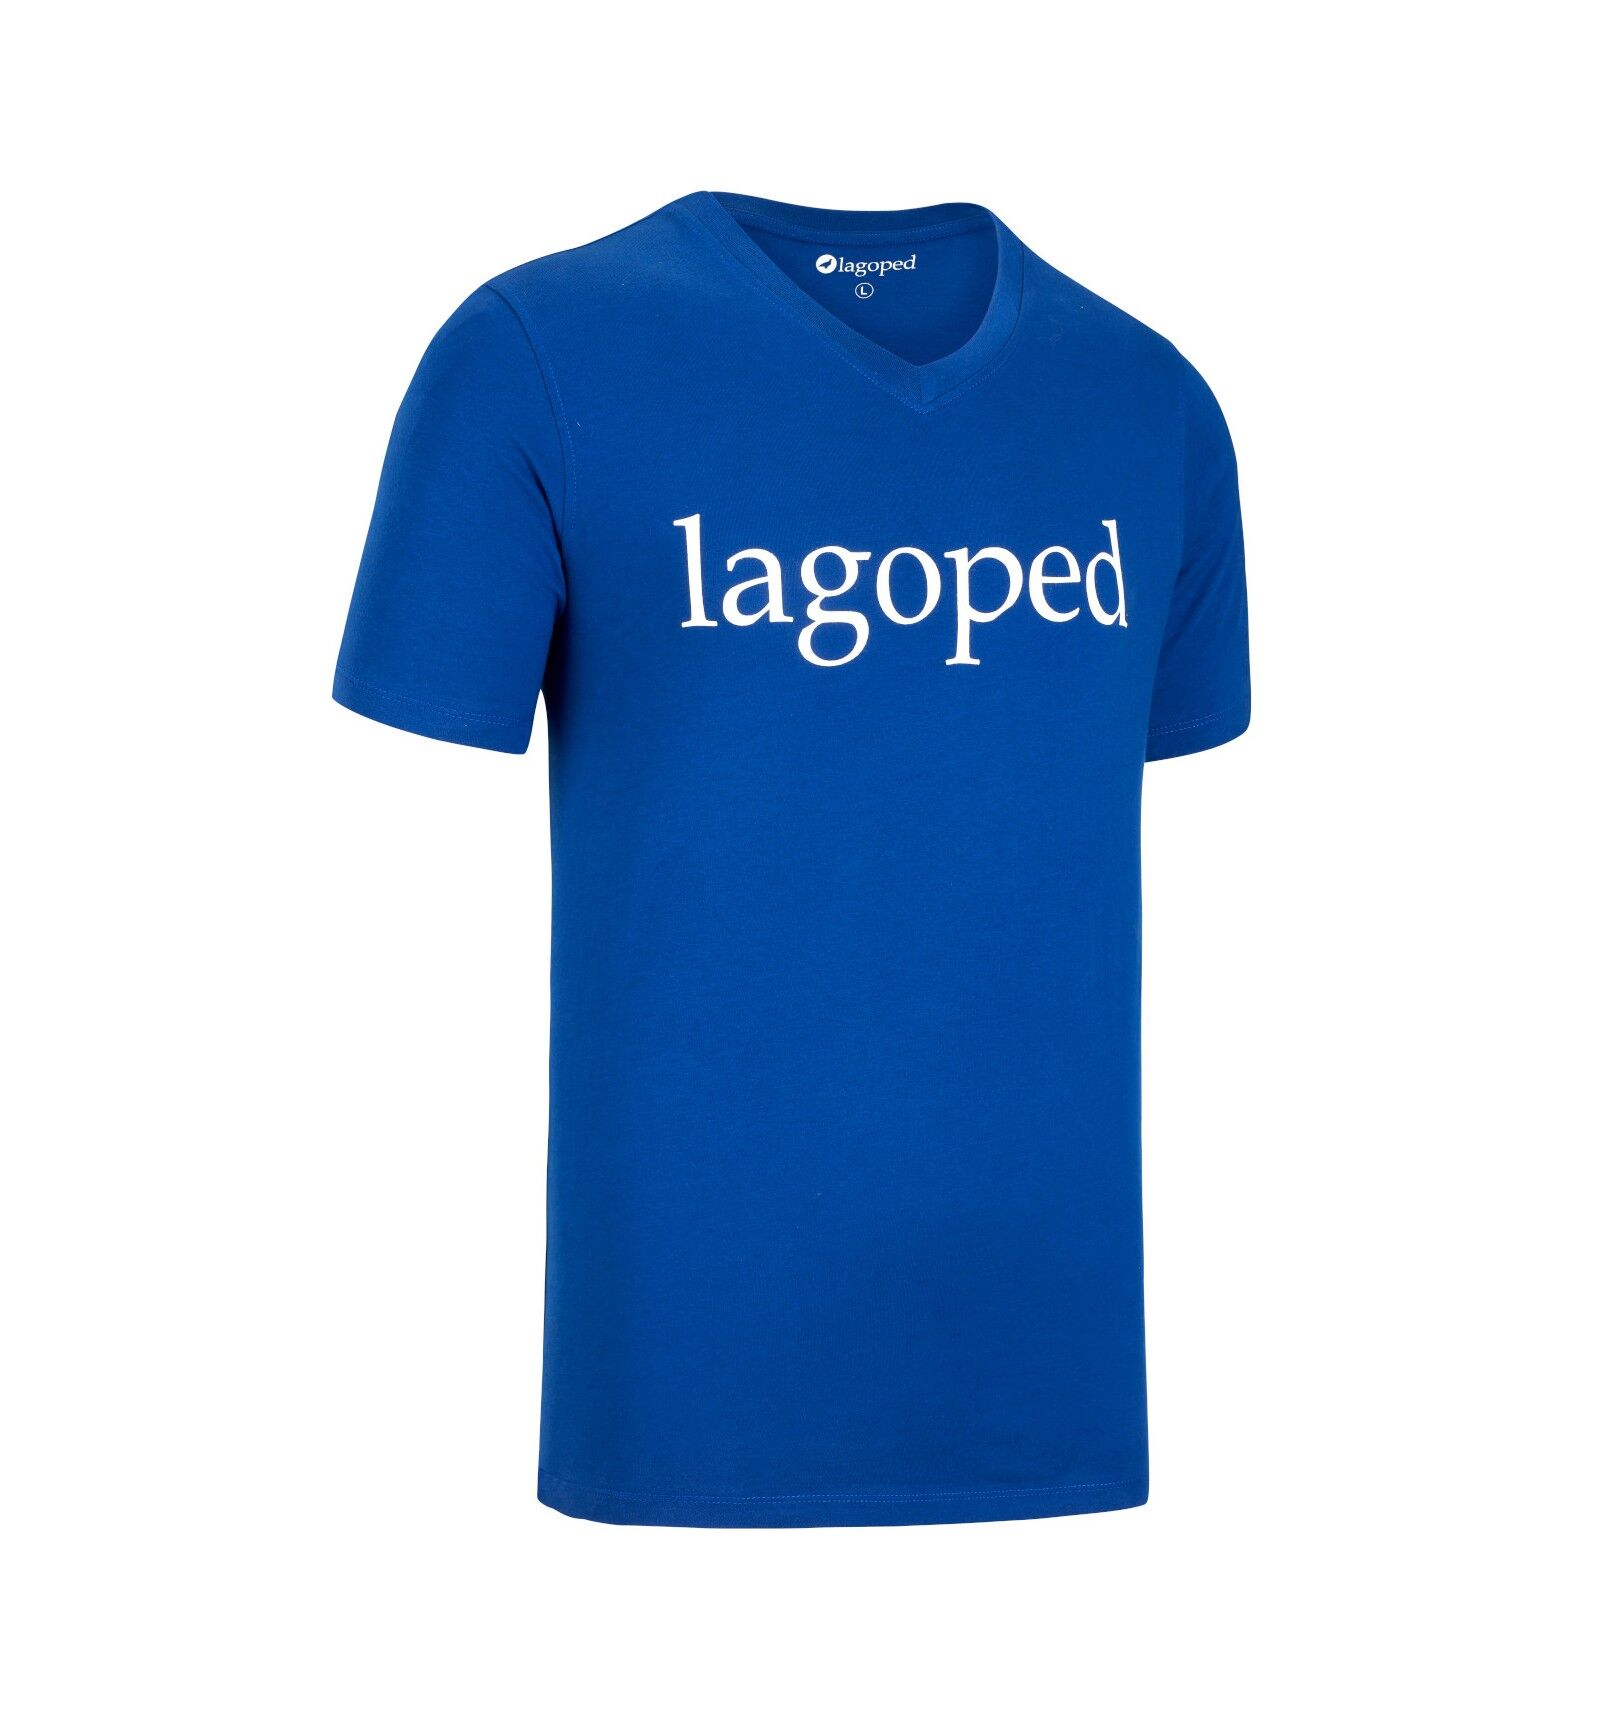 Lagoped Gotee - Camiseta - Hombre